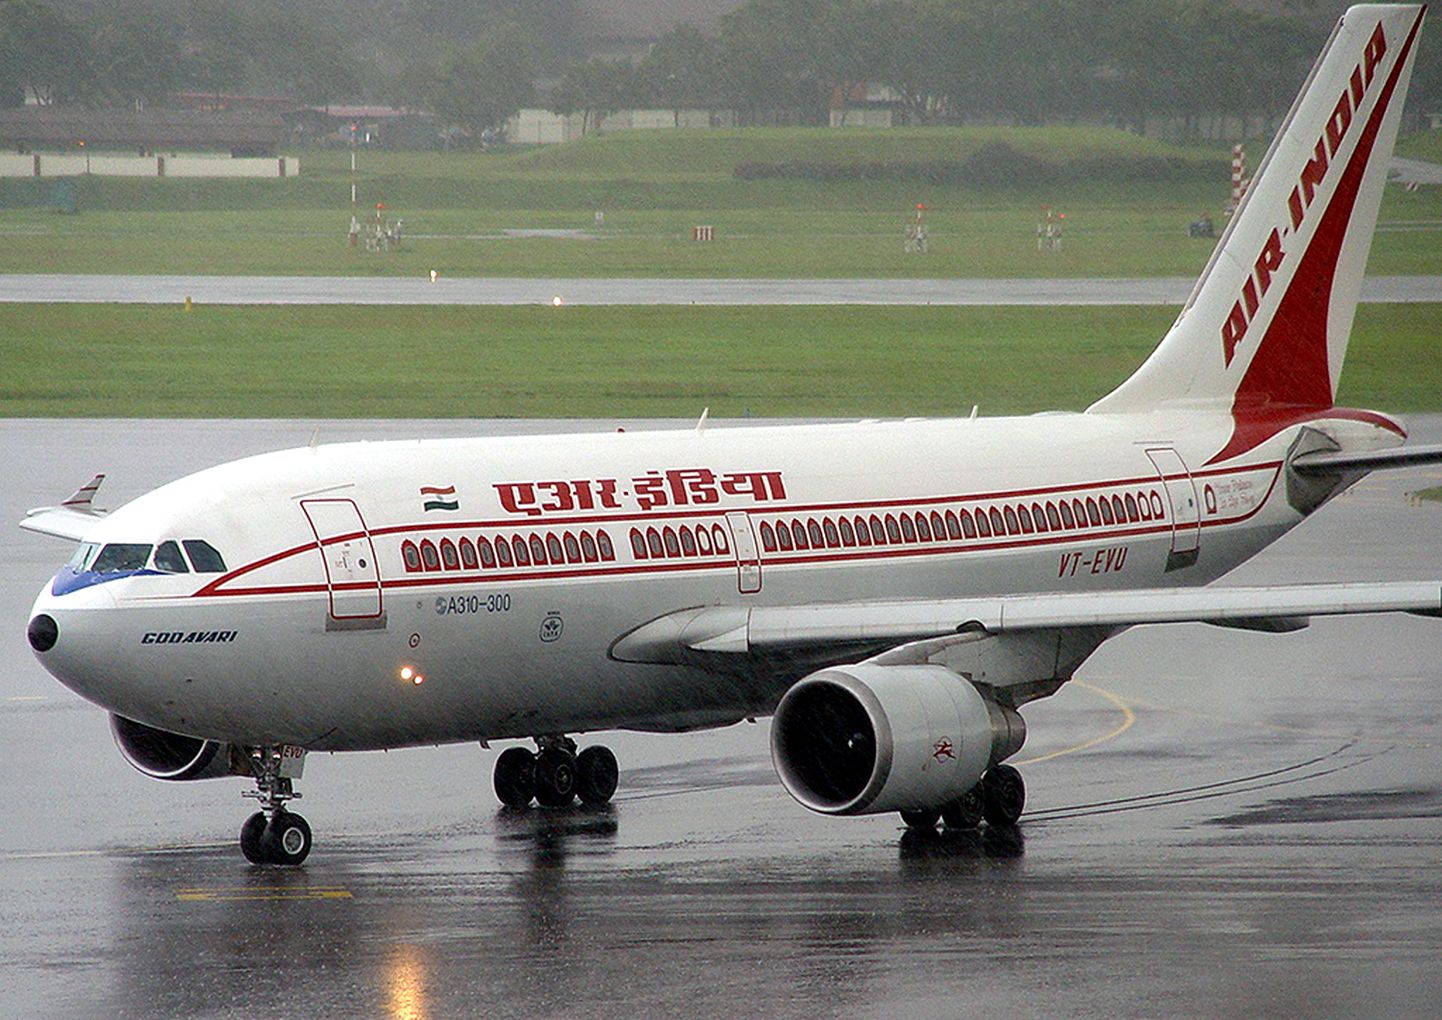 Air India A310-300 maandumas vihmast märjale rajale.